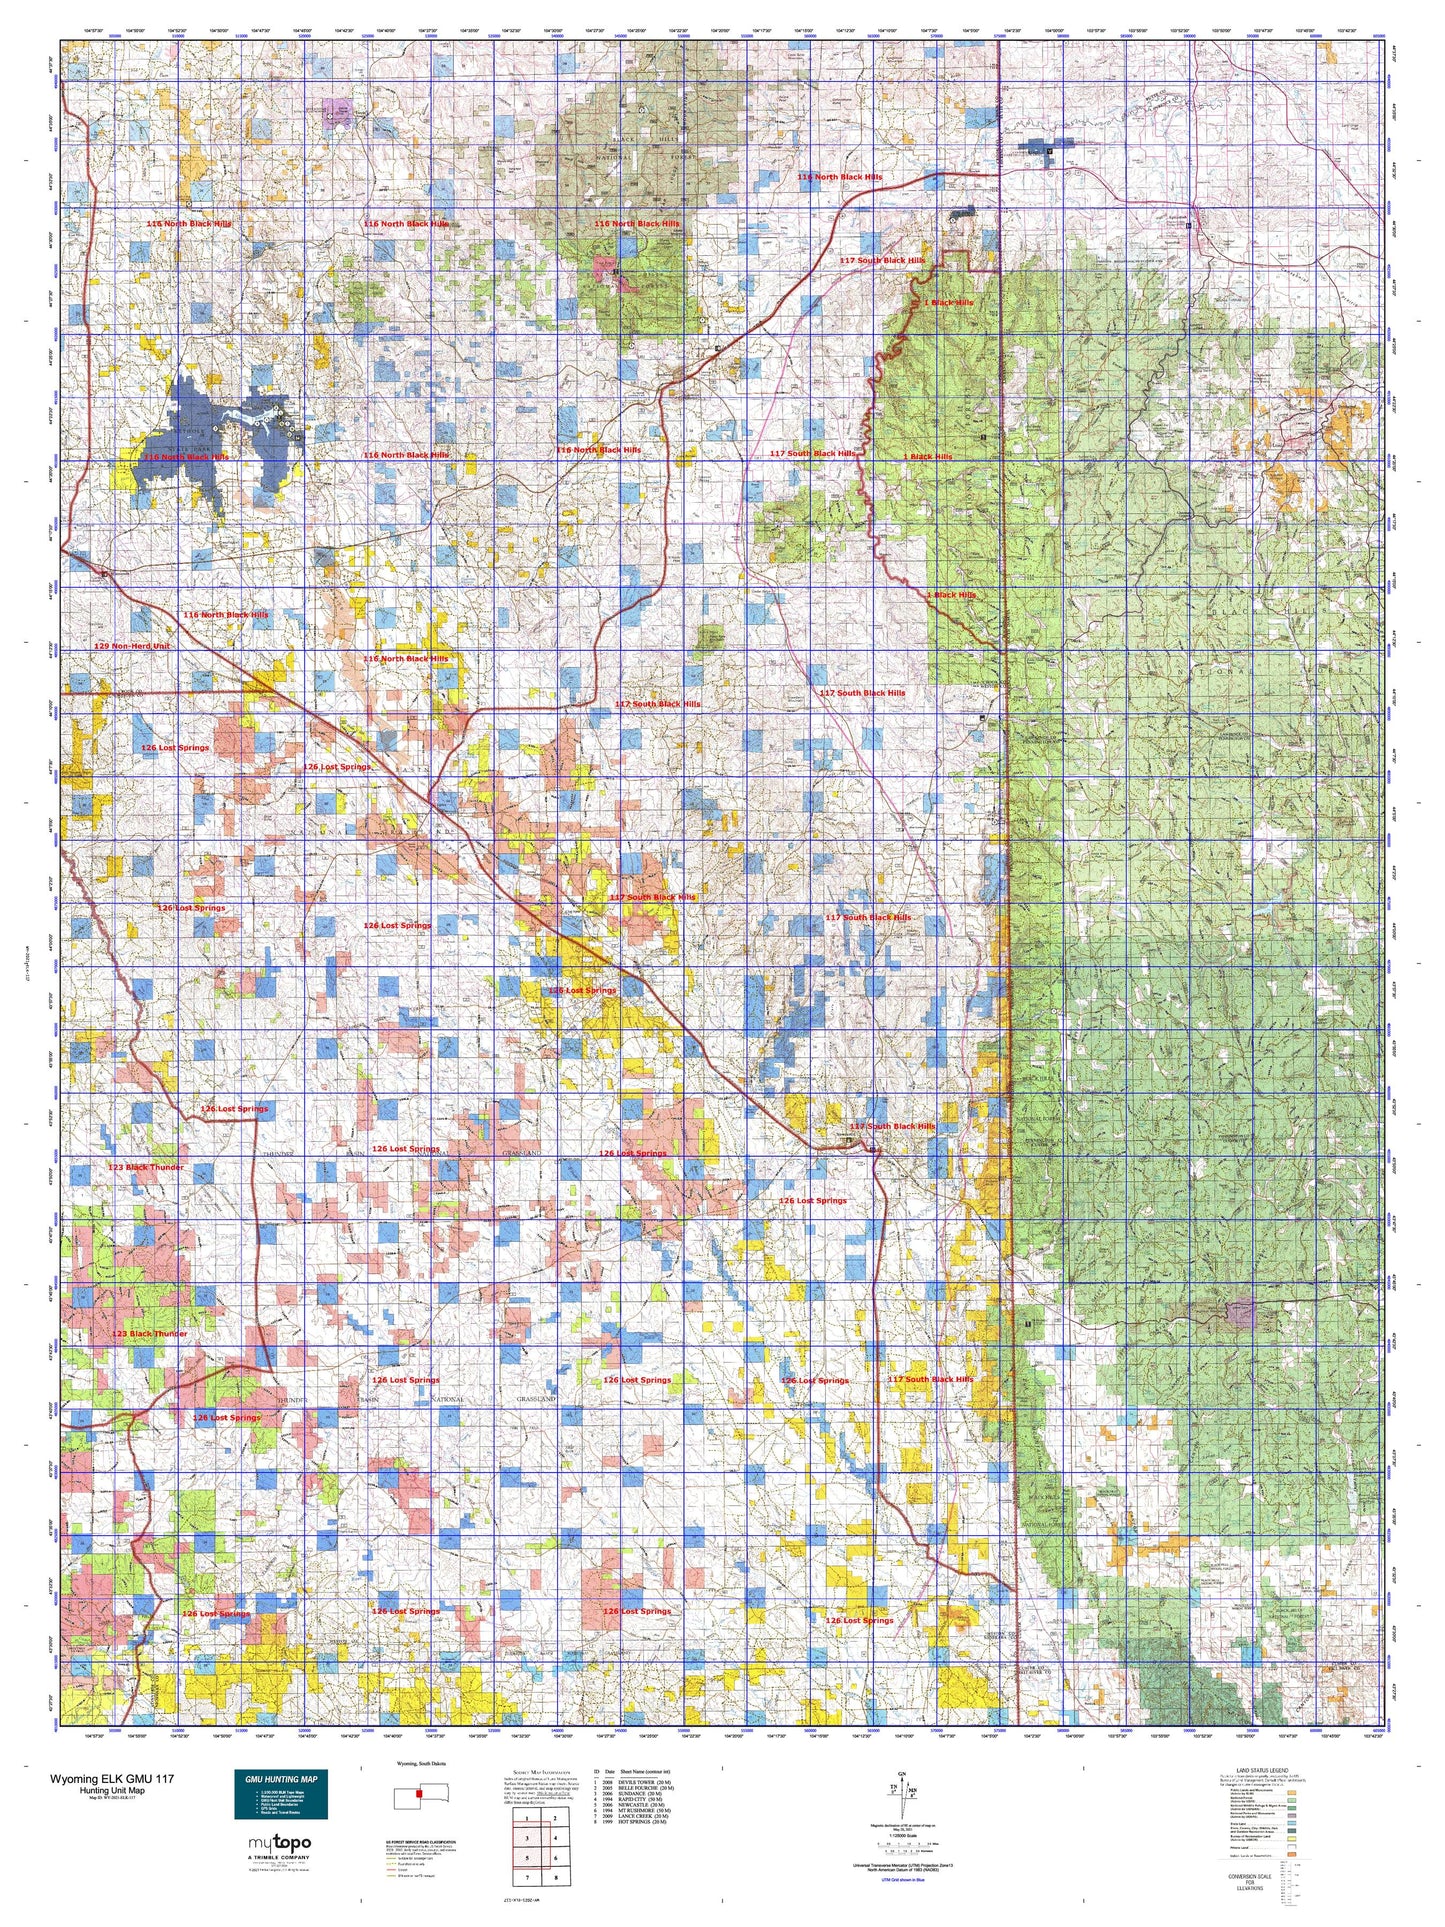 Wyoming Elk GMU 117 Map Image